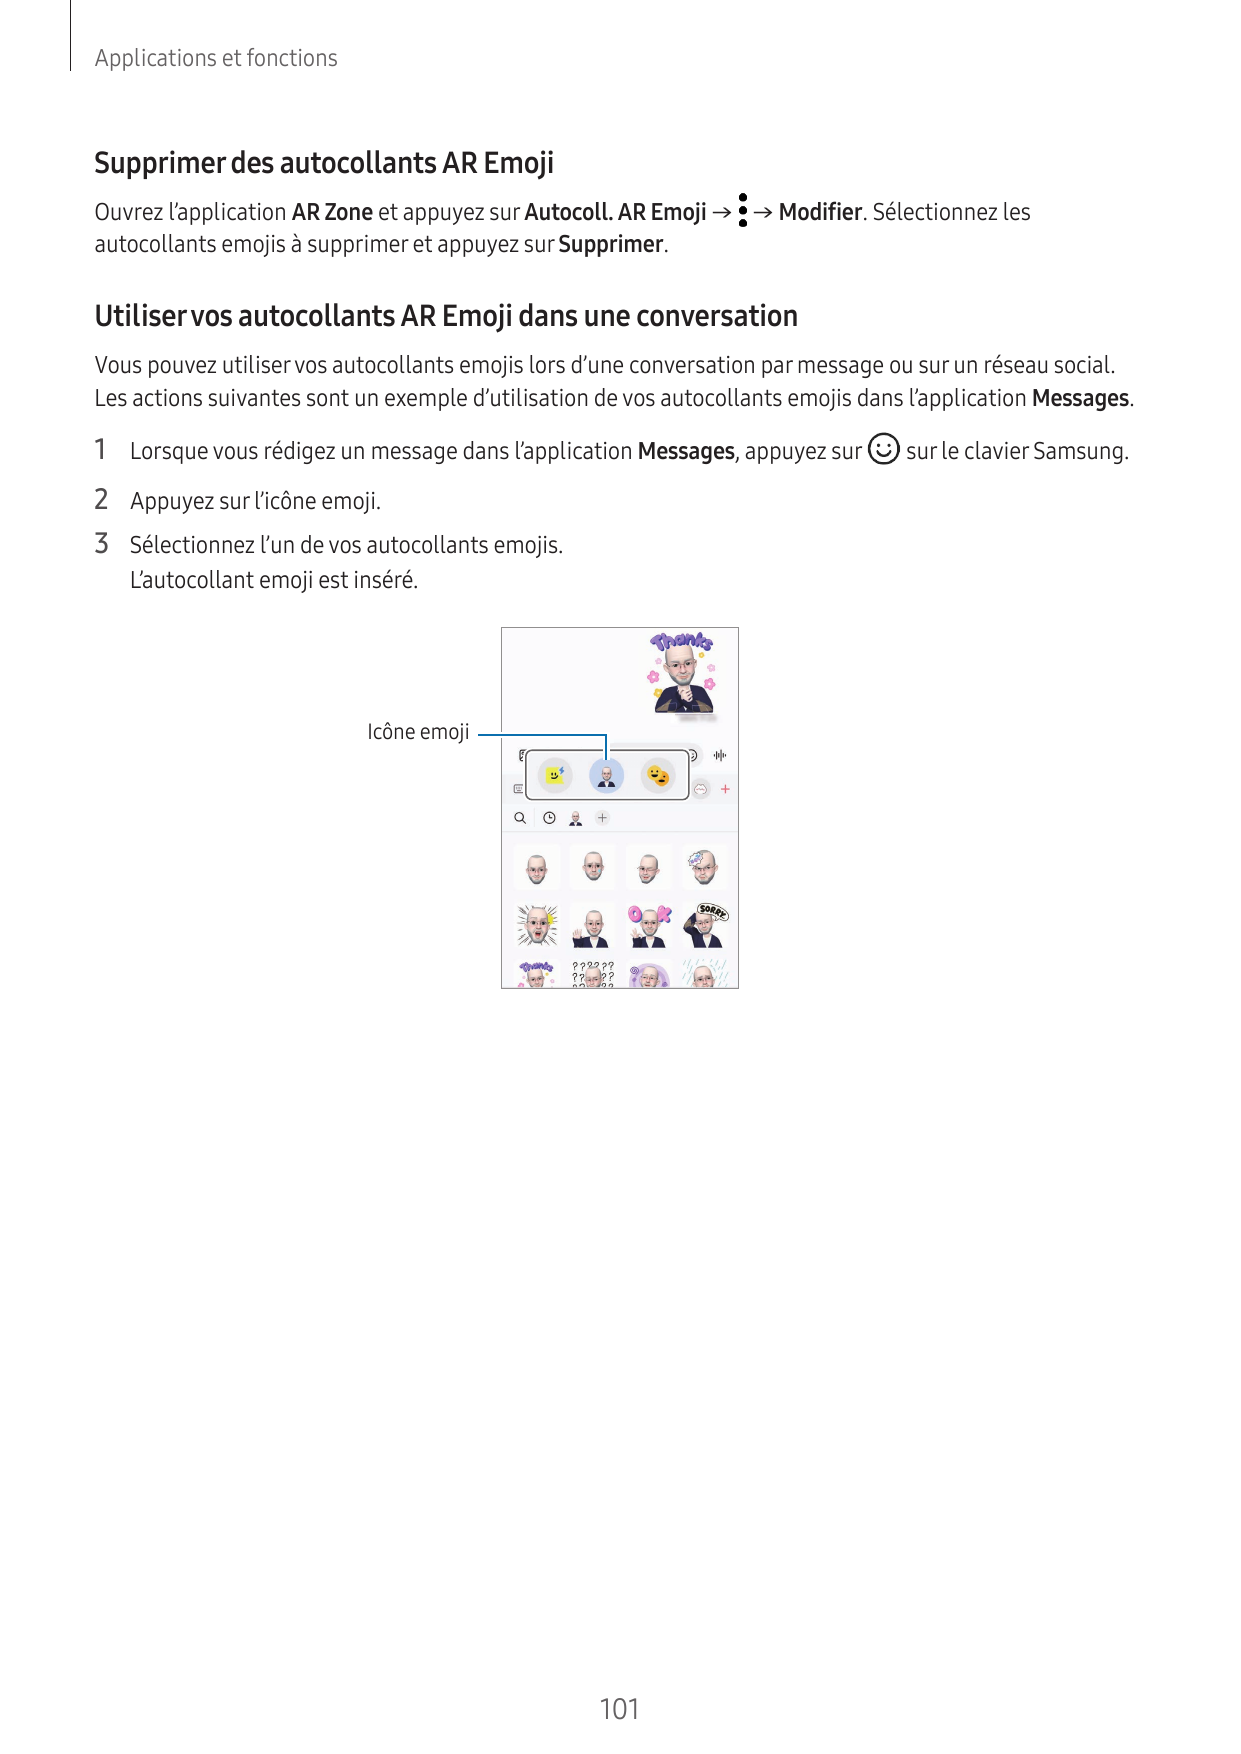 Applications et fonctionsSupprimer des autocollants AR EmojiOuvrez l’application AR Zone et appuyez sur Autocoll. AR Emoji → → M